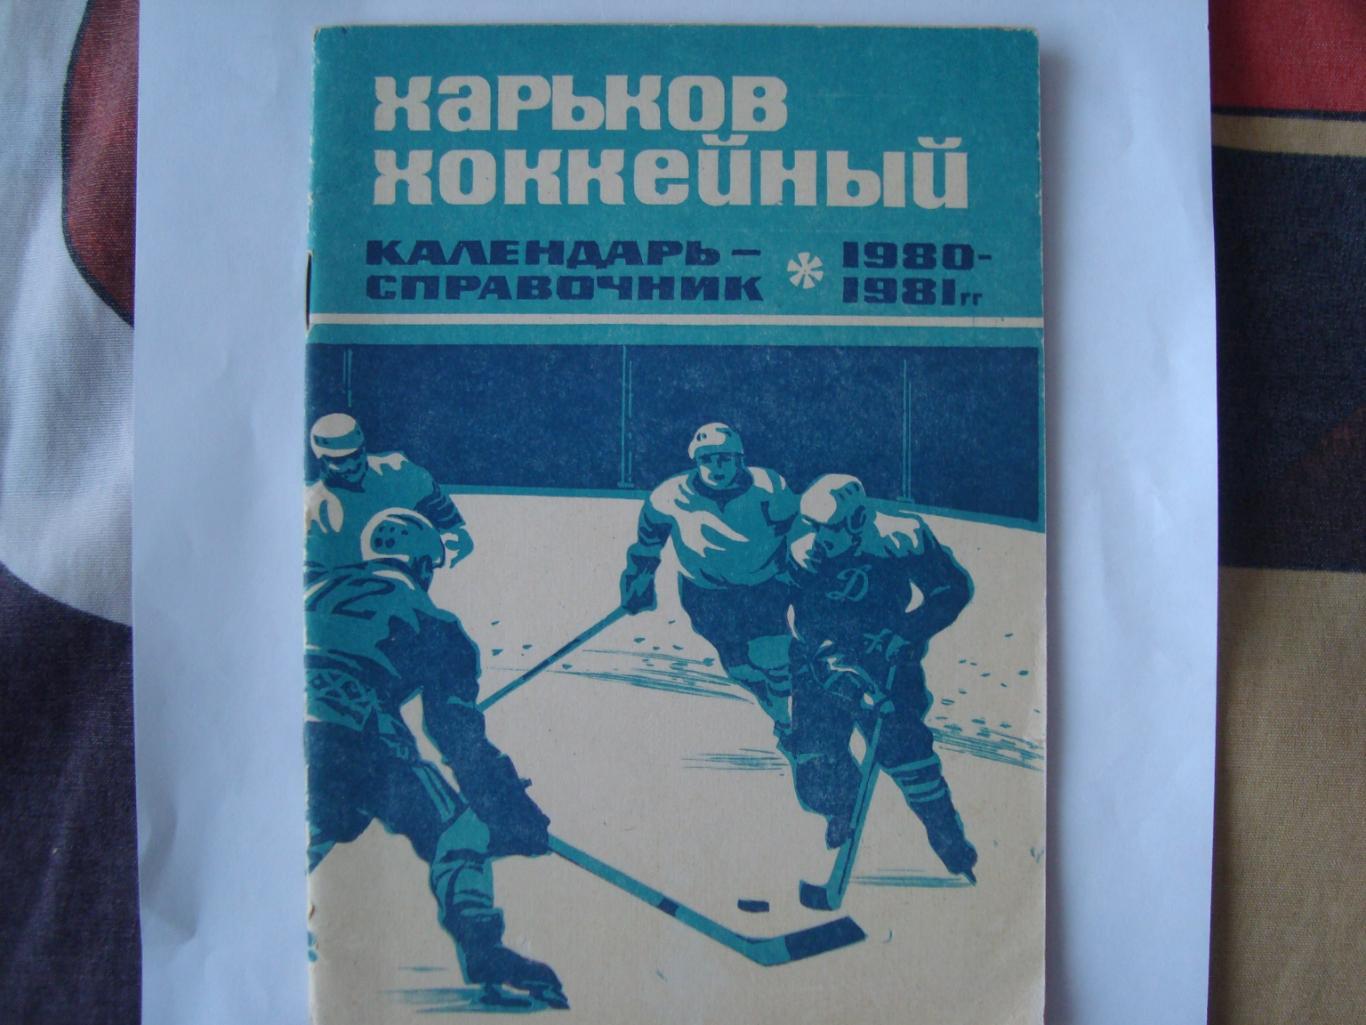 Хоккей. Харьков. 1980/81.